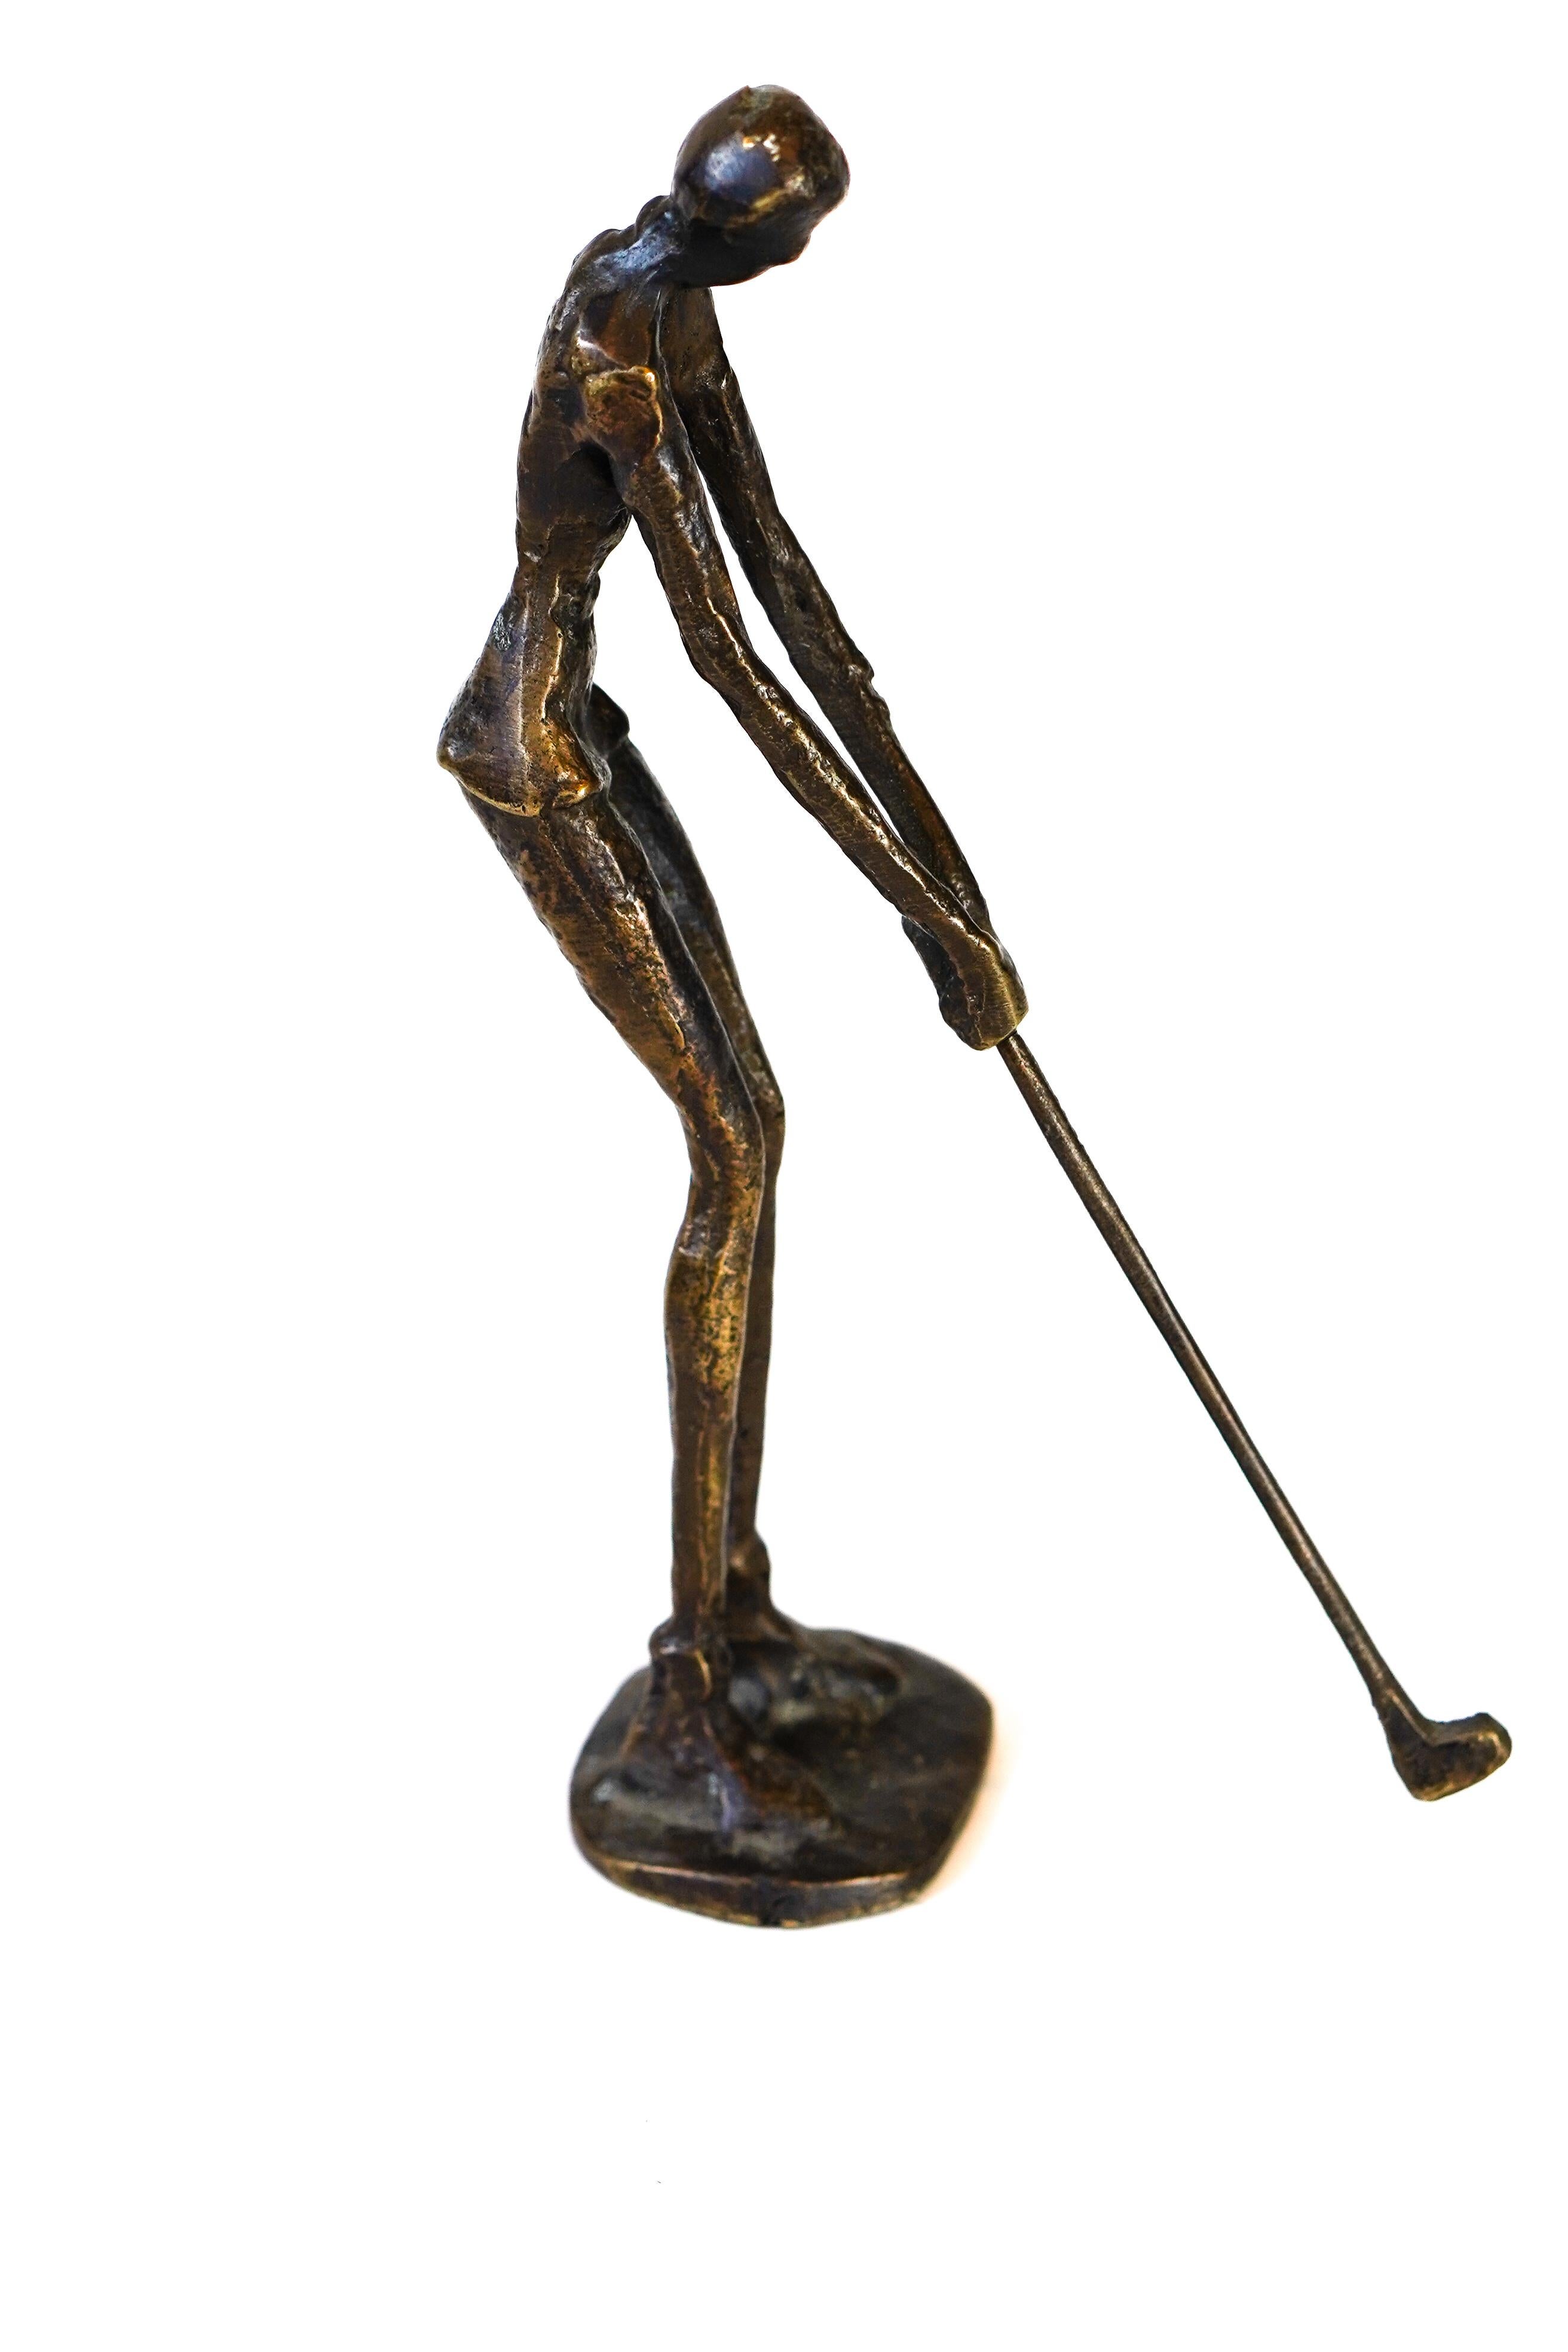 20th Century Brutalist Mid-Century Modern Style Golfer Sculpture